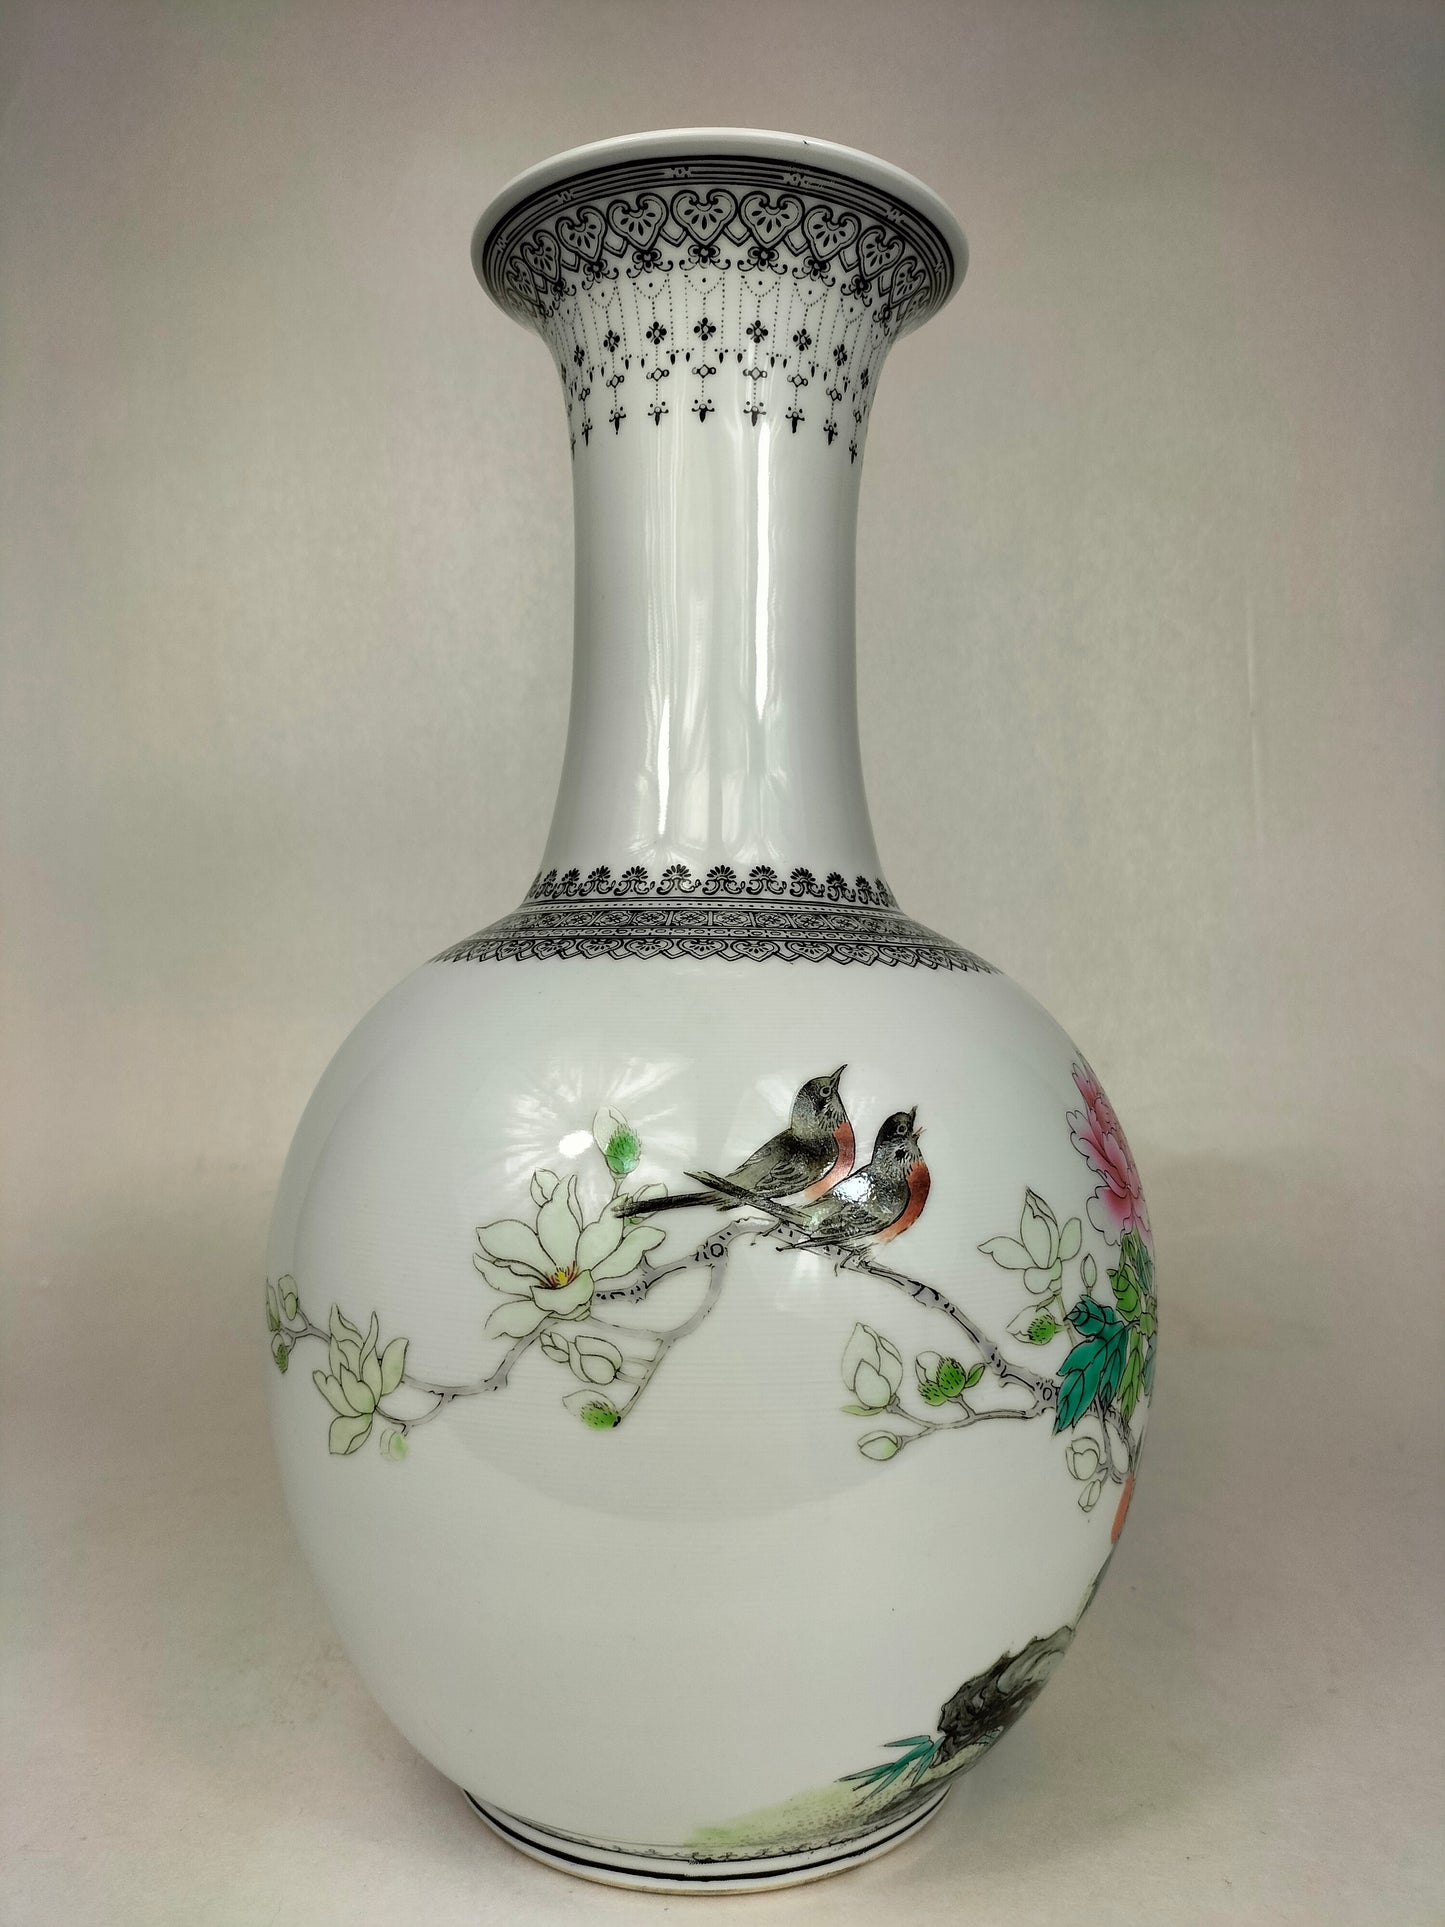 مزهرية زجاجة صينية عتيقة مزينة بالورود // جينغدتشن - القرن العشرين